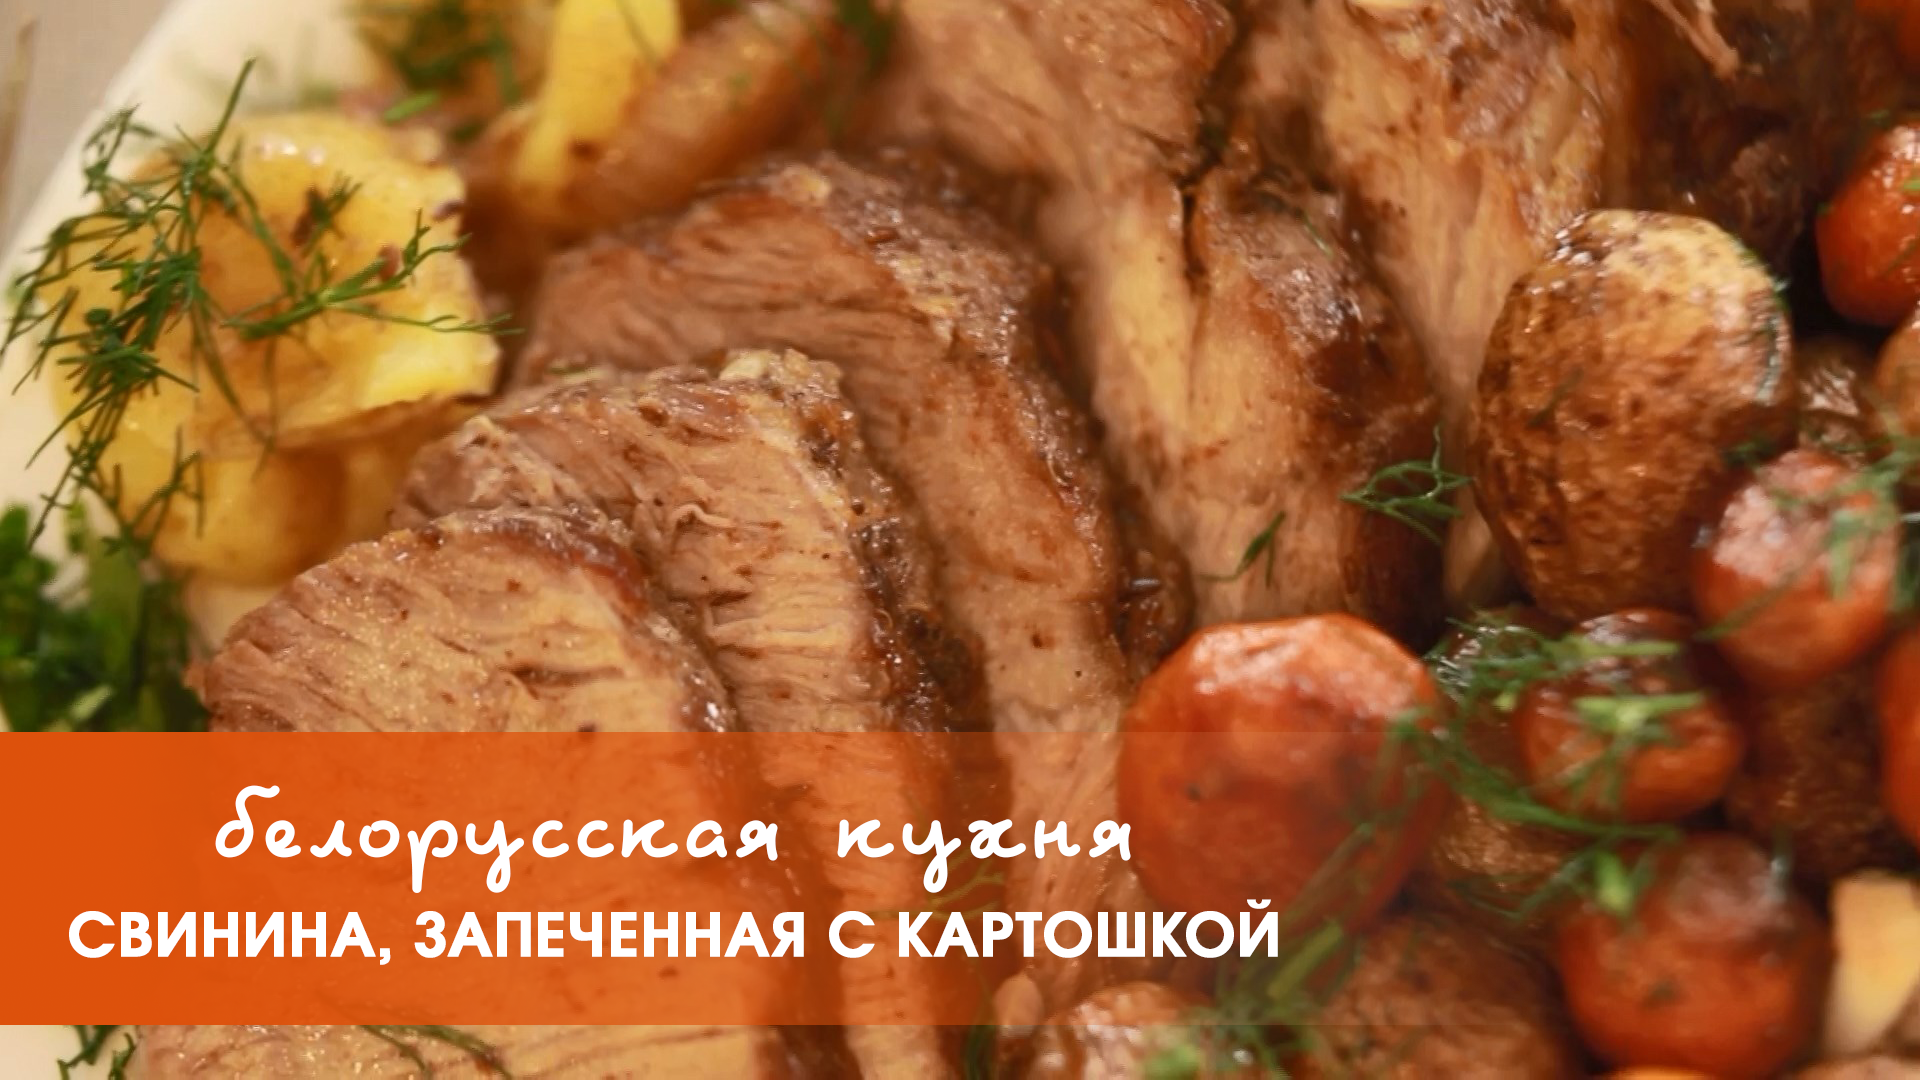 Белорусская кухня: свинина, запеченная с картошкой